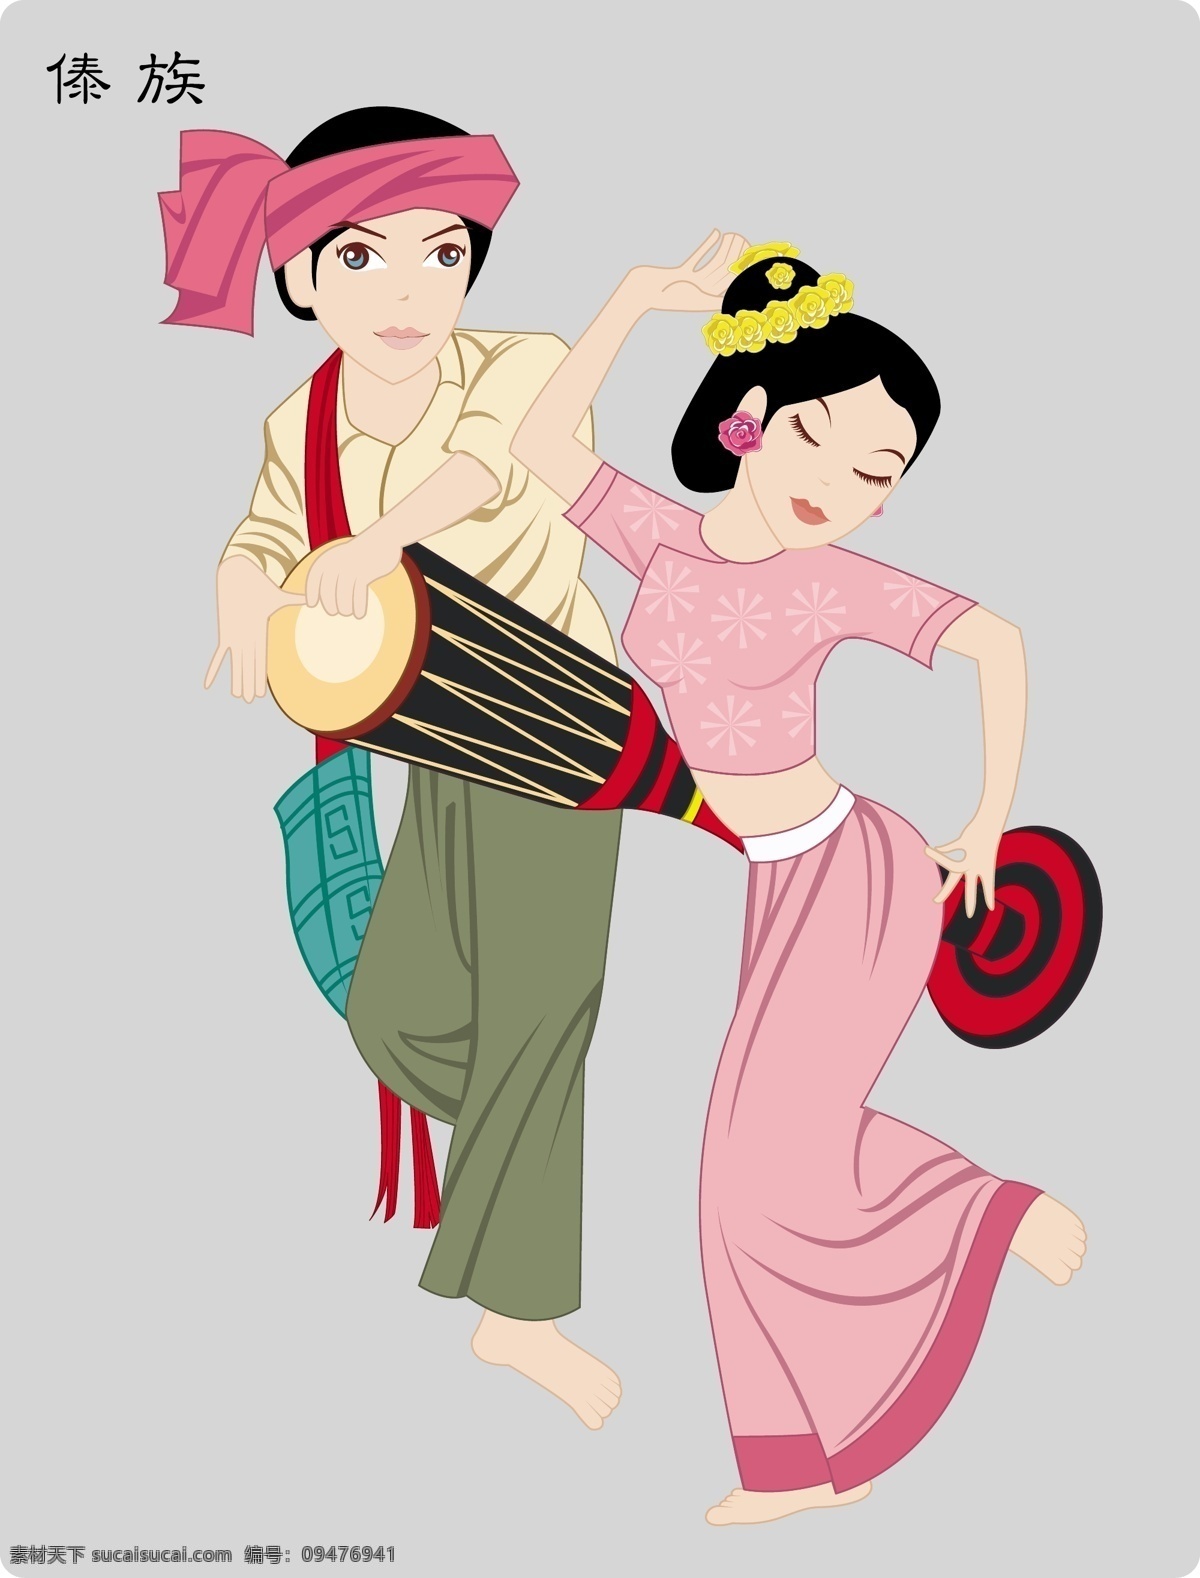 傣族舞蹈 少数民族 舞蹈 人物 卡通 服装 中国 地方 活泼